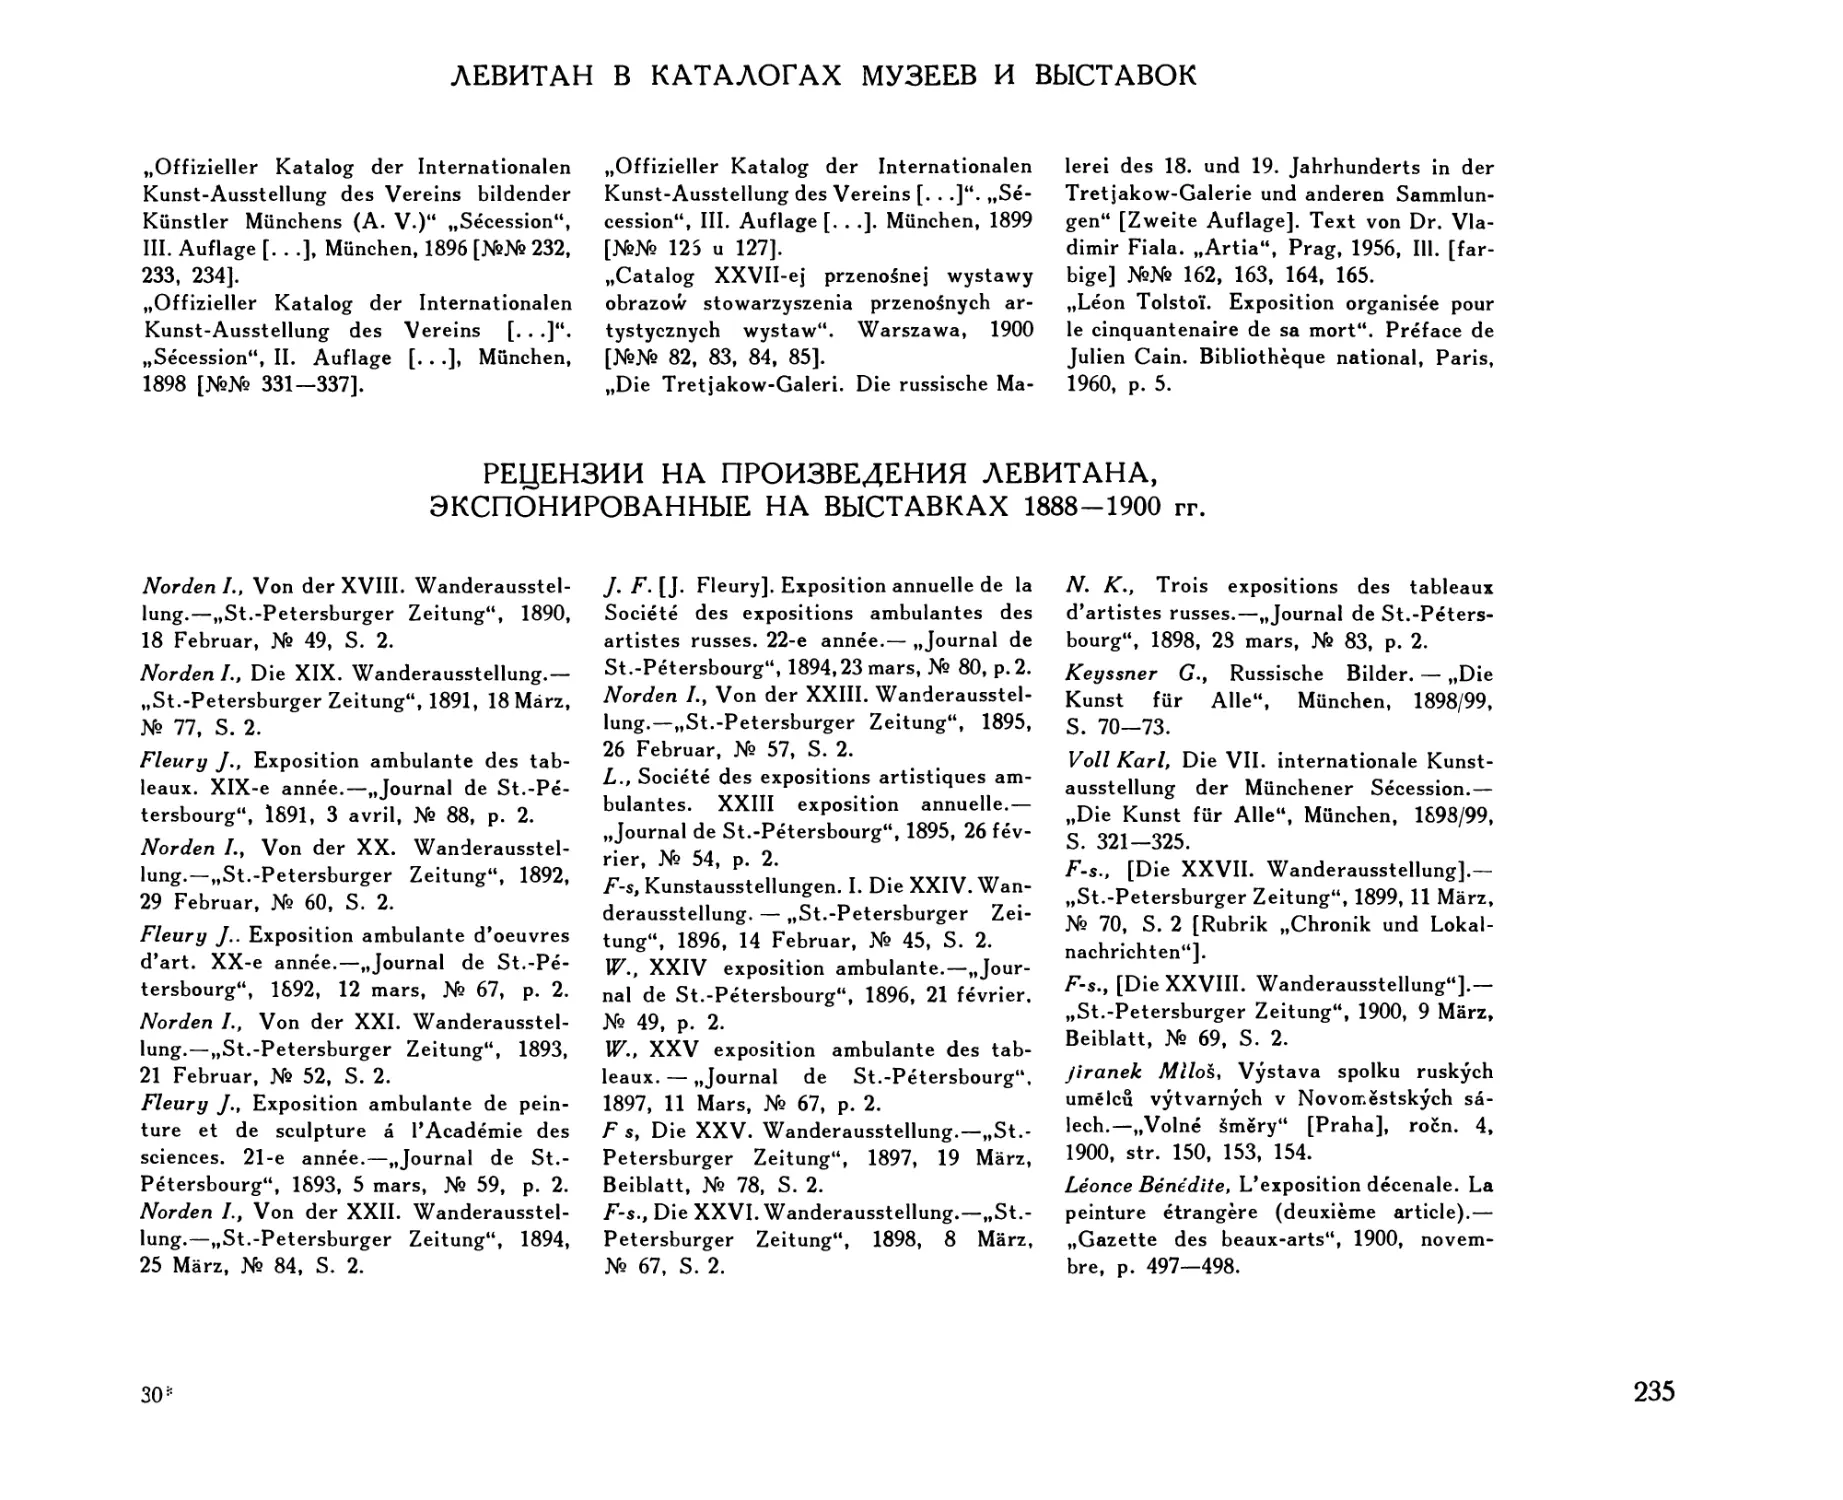 Левитан в каталогах музеев и выставок
Рецензии на произведения Левитана, экспонированные на выставках 1888-1900 гг